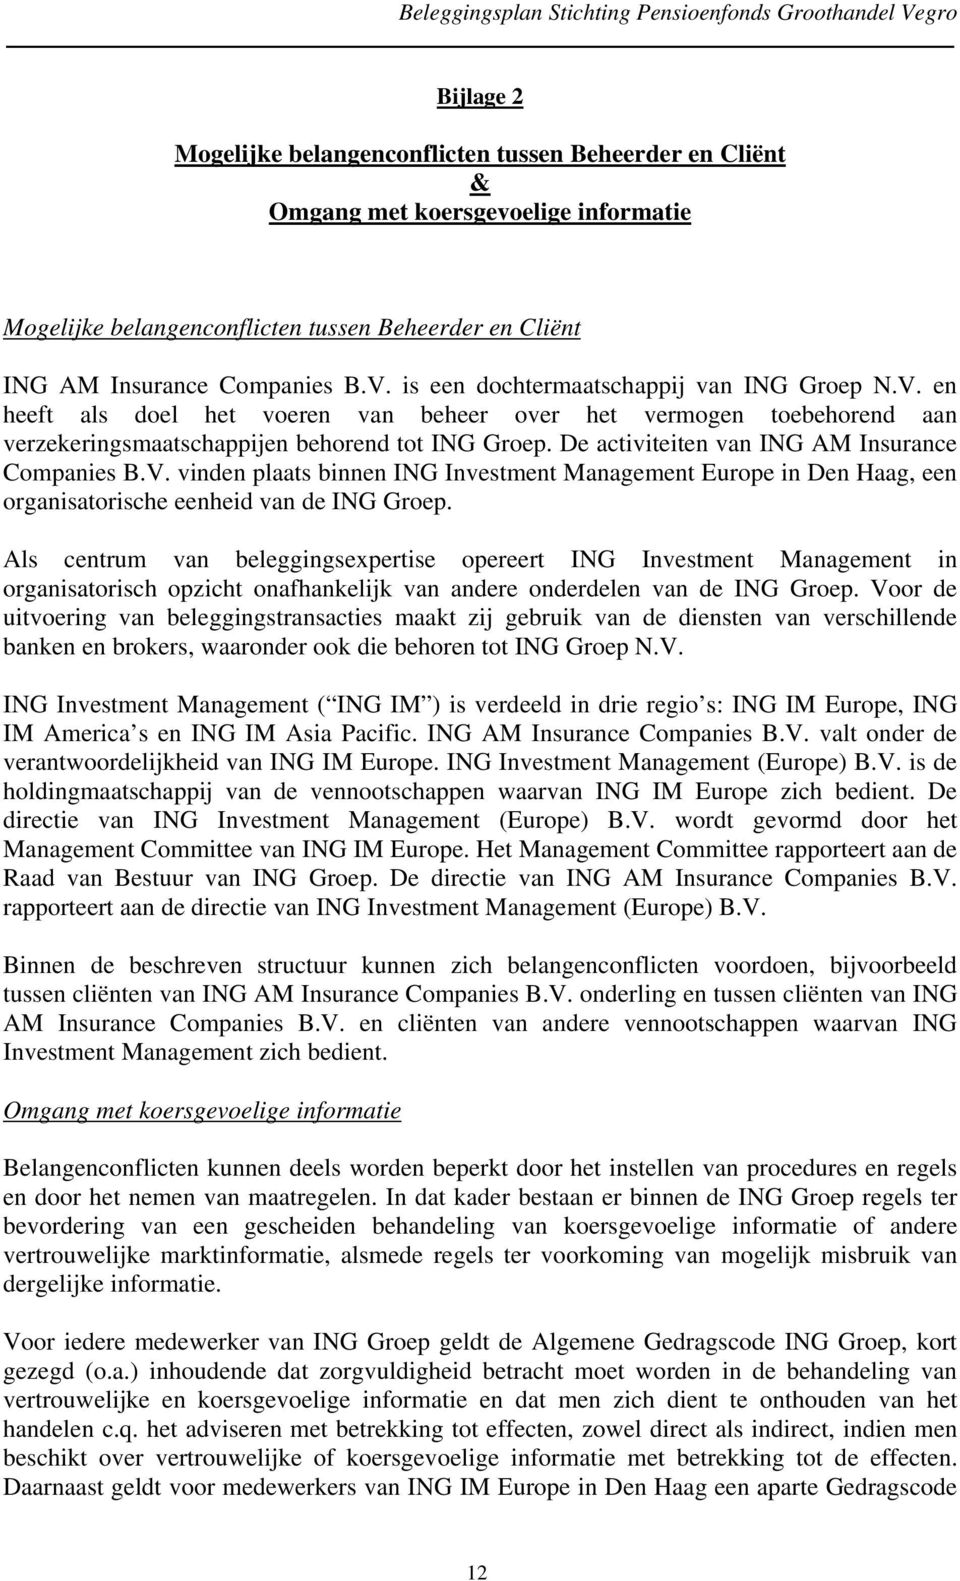 De activiteiten van ING AM Insurance Companies B.V. vinden plaats binnen ING Investment Management Europe in Den Haag, een organisatorische eenheid van de ING Groep.